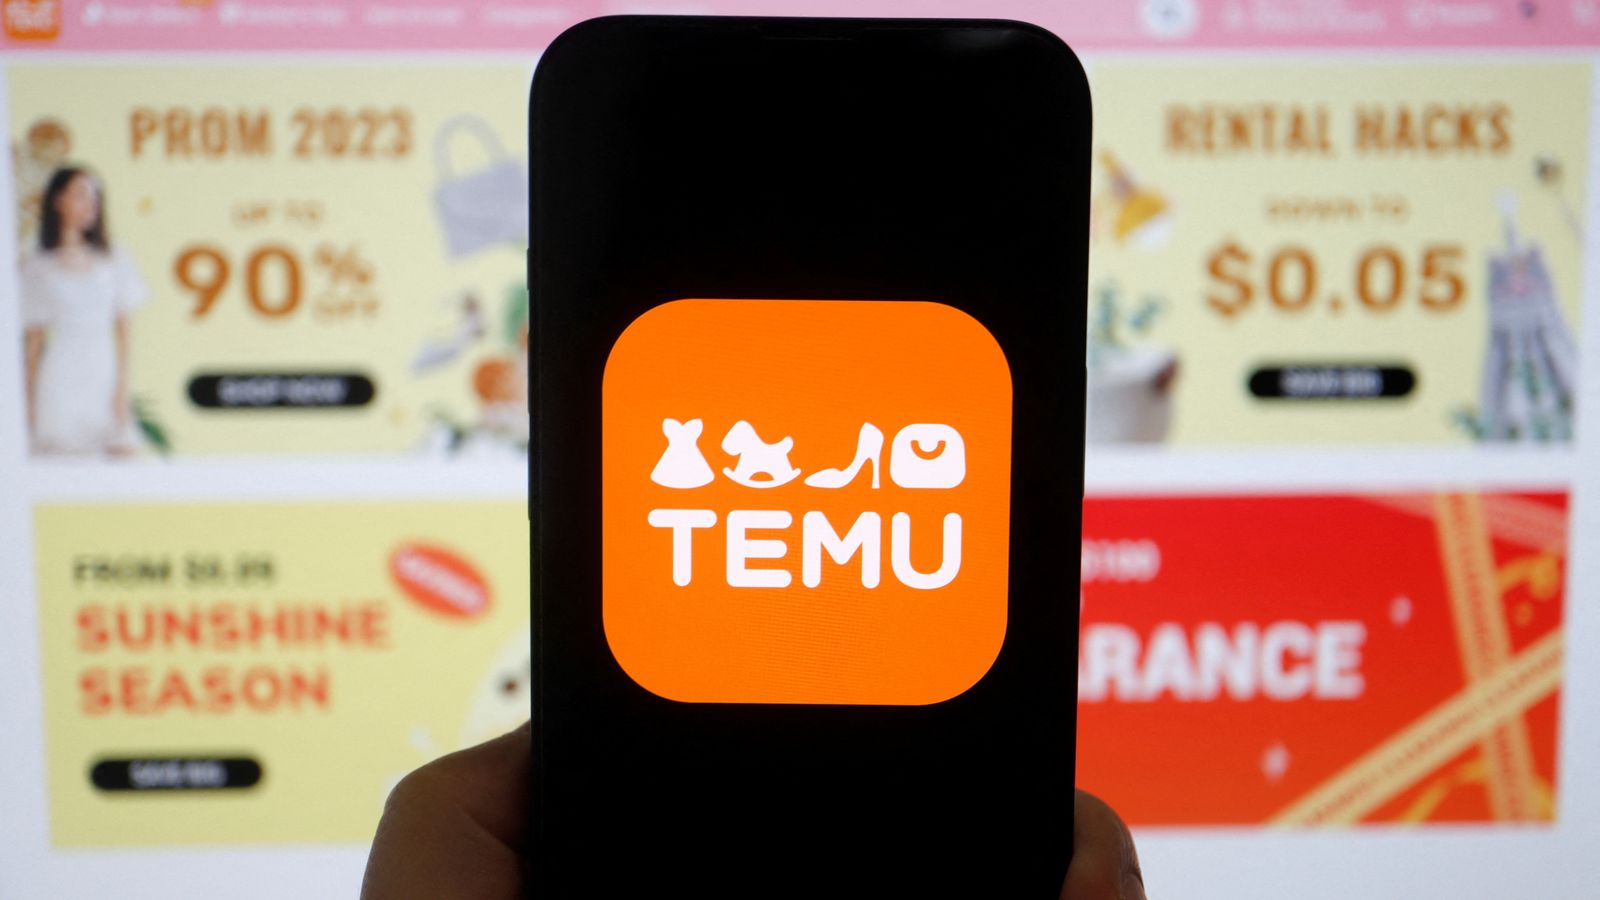 Temu fait face à une contestation judiciaire pour « pratiques manipulatrices » |  Actualités scientifiques et technologiques